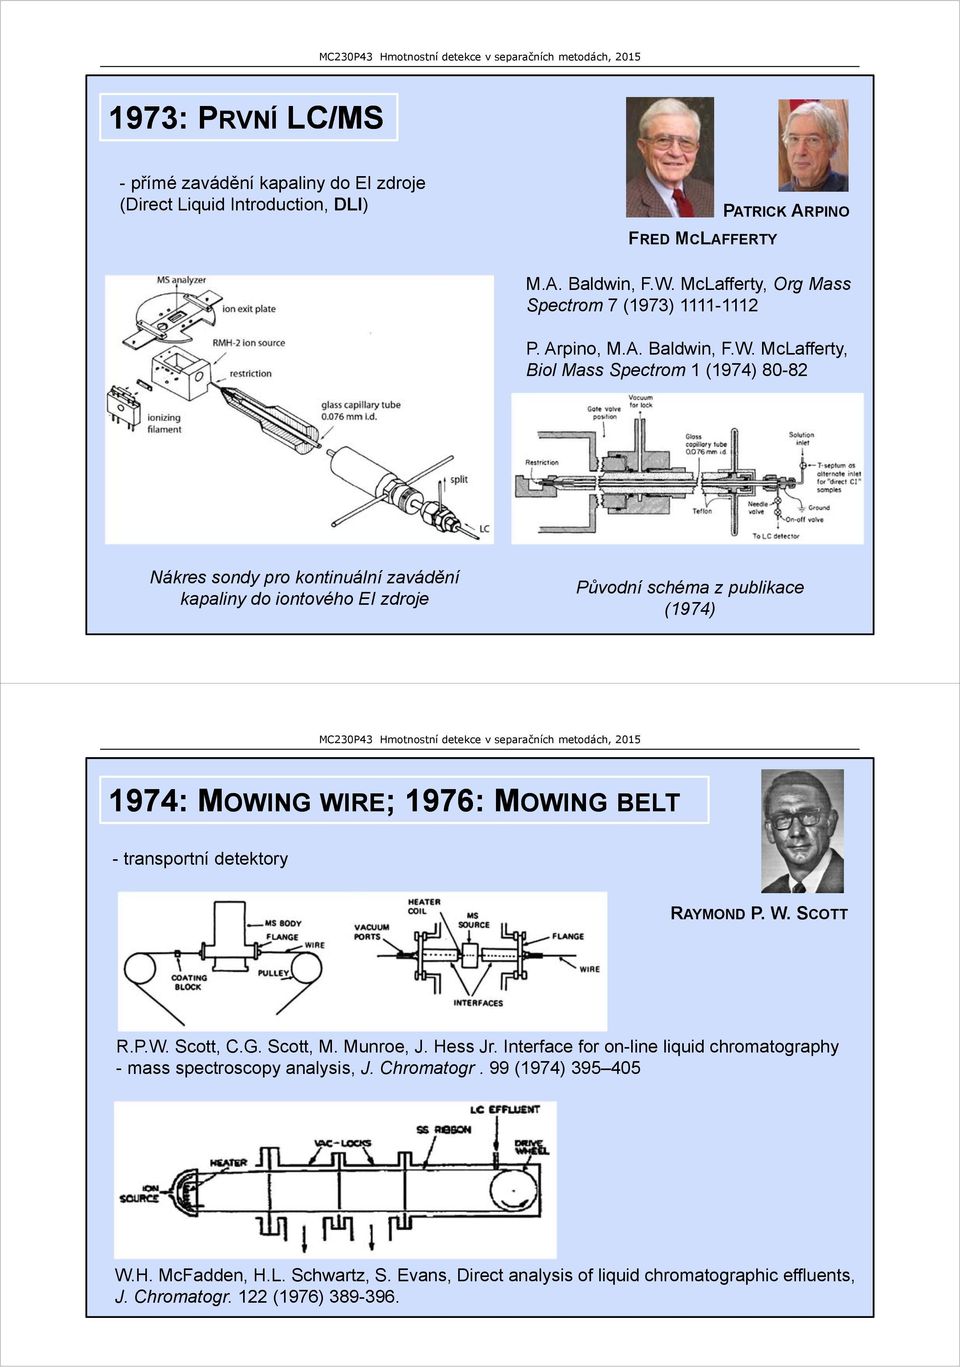 McLafferty, Biol Mass Spectrom 1 (1974) 80-82 Nákres sondy pro kontinuální zavádění kapaliny do iontového EI zdroje Původní schéma z publikace (1974) 1974: MOWING WIRE; 1976: MOWING